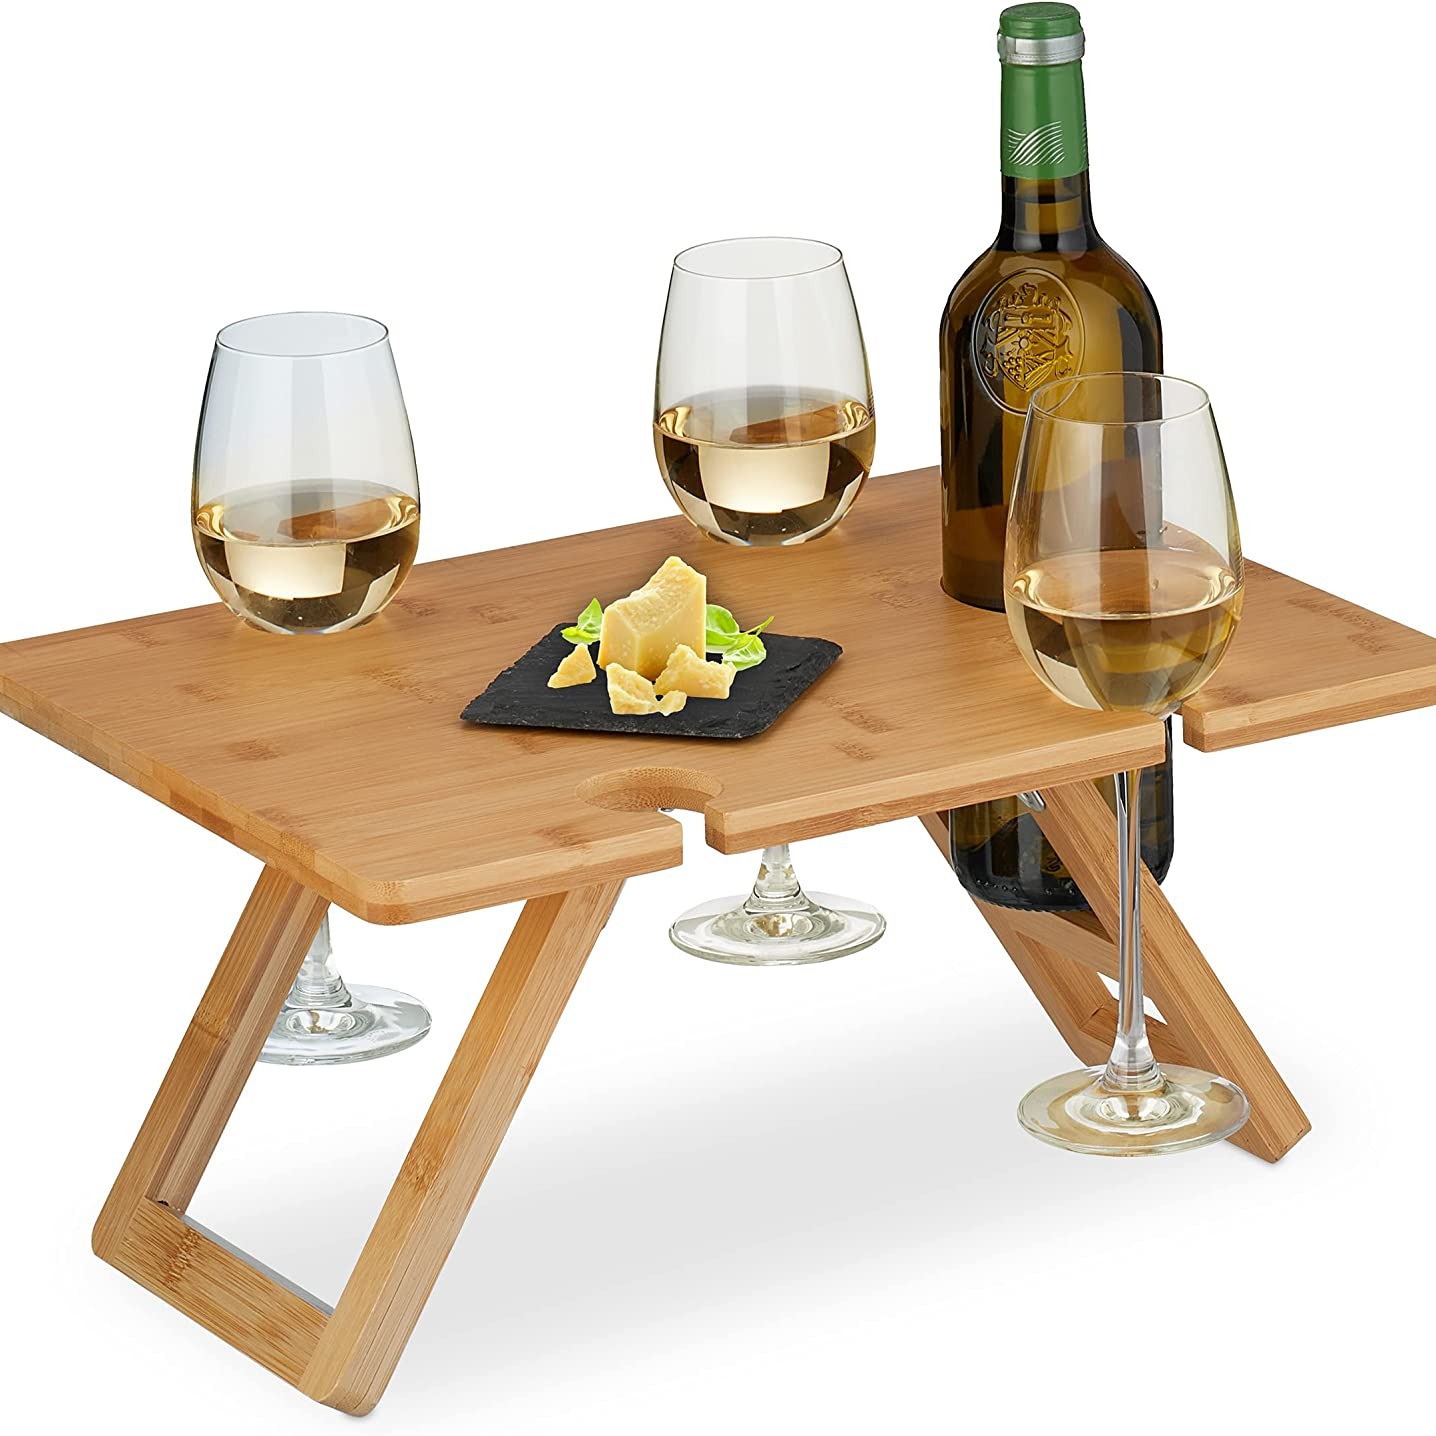 创意竹木折叠餐桌沙滩烧烤户外露营便携式木质野餐桌方形红酒杯桌